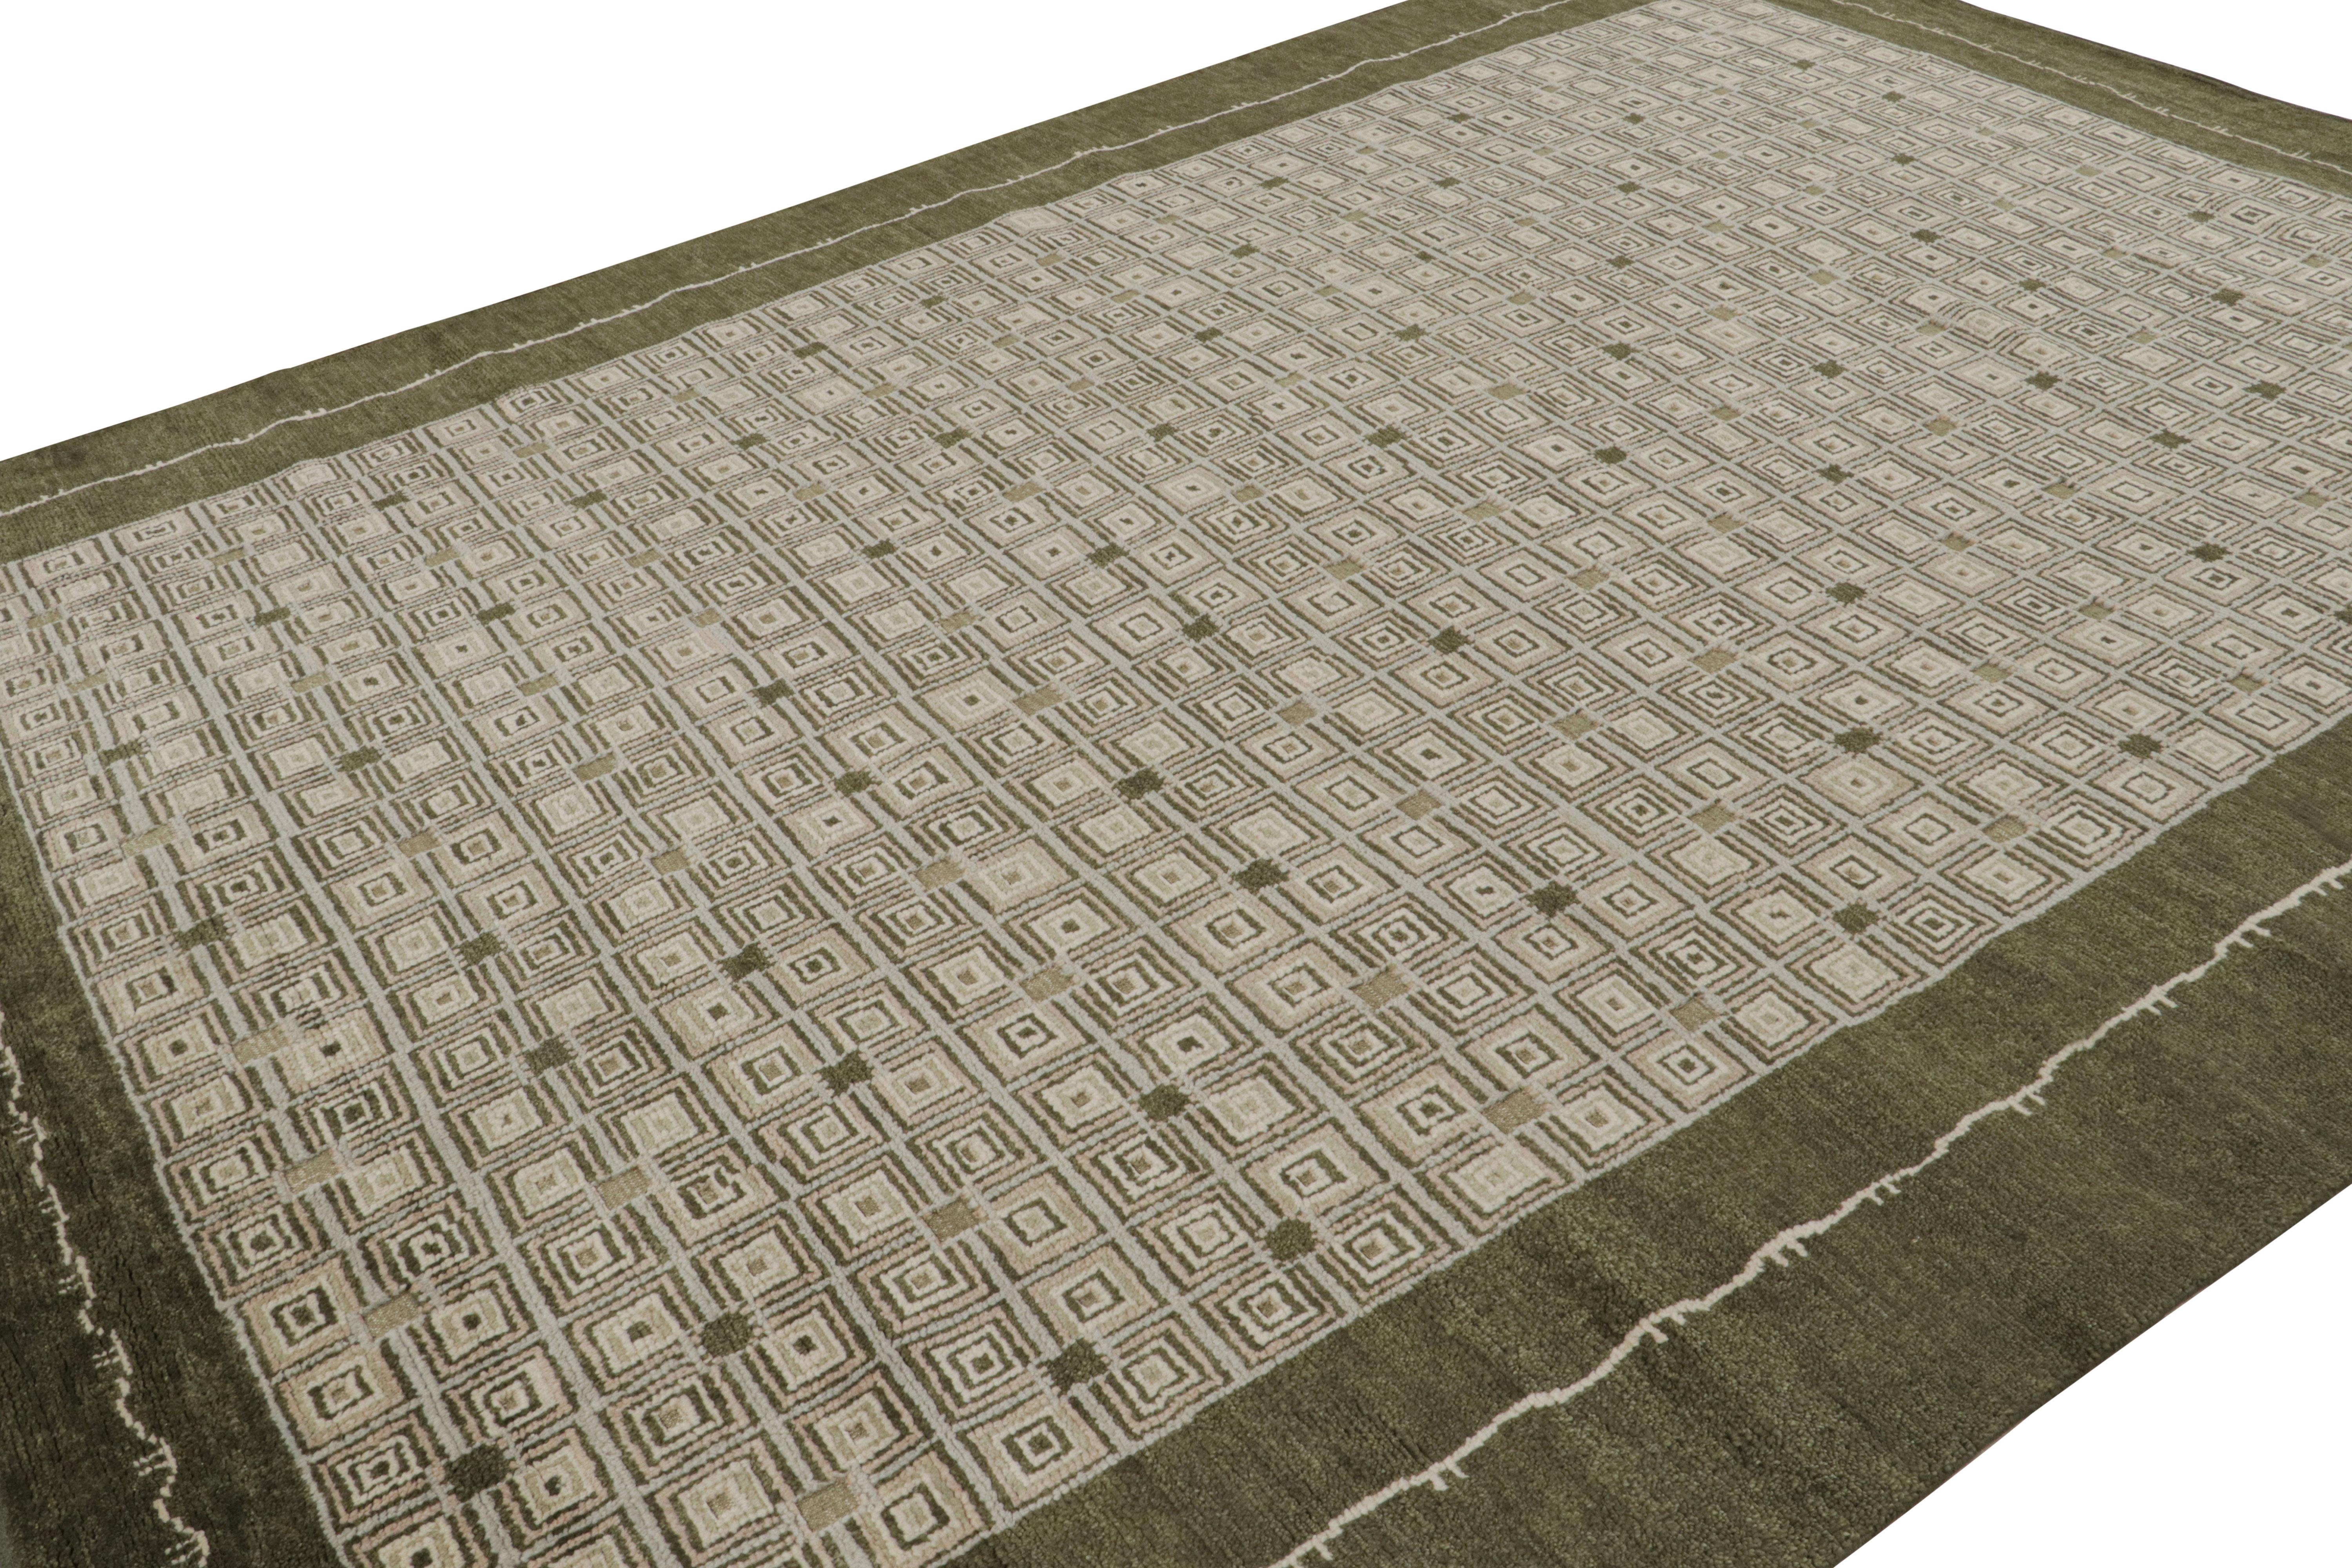 Noué à la main en laine, ce tapis moderne 9x12 de Rug & Kilim est un nouvel ajout à la ligne de tapis Art déco français. Son design s'inspire du Design Modern des pièces d'époque européennes des années 1920.  

Sur le Design : 

Sur ce tapis, les